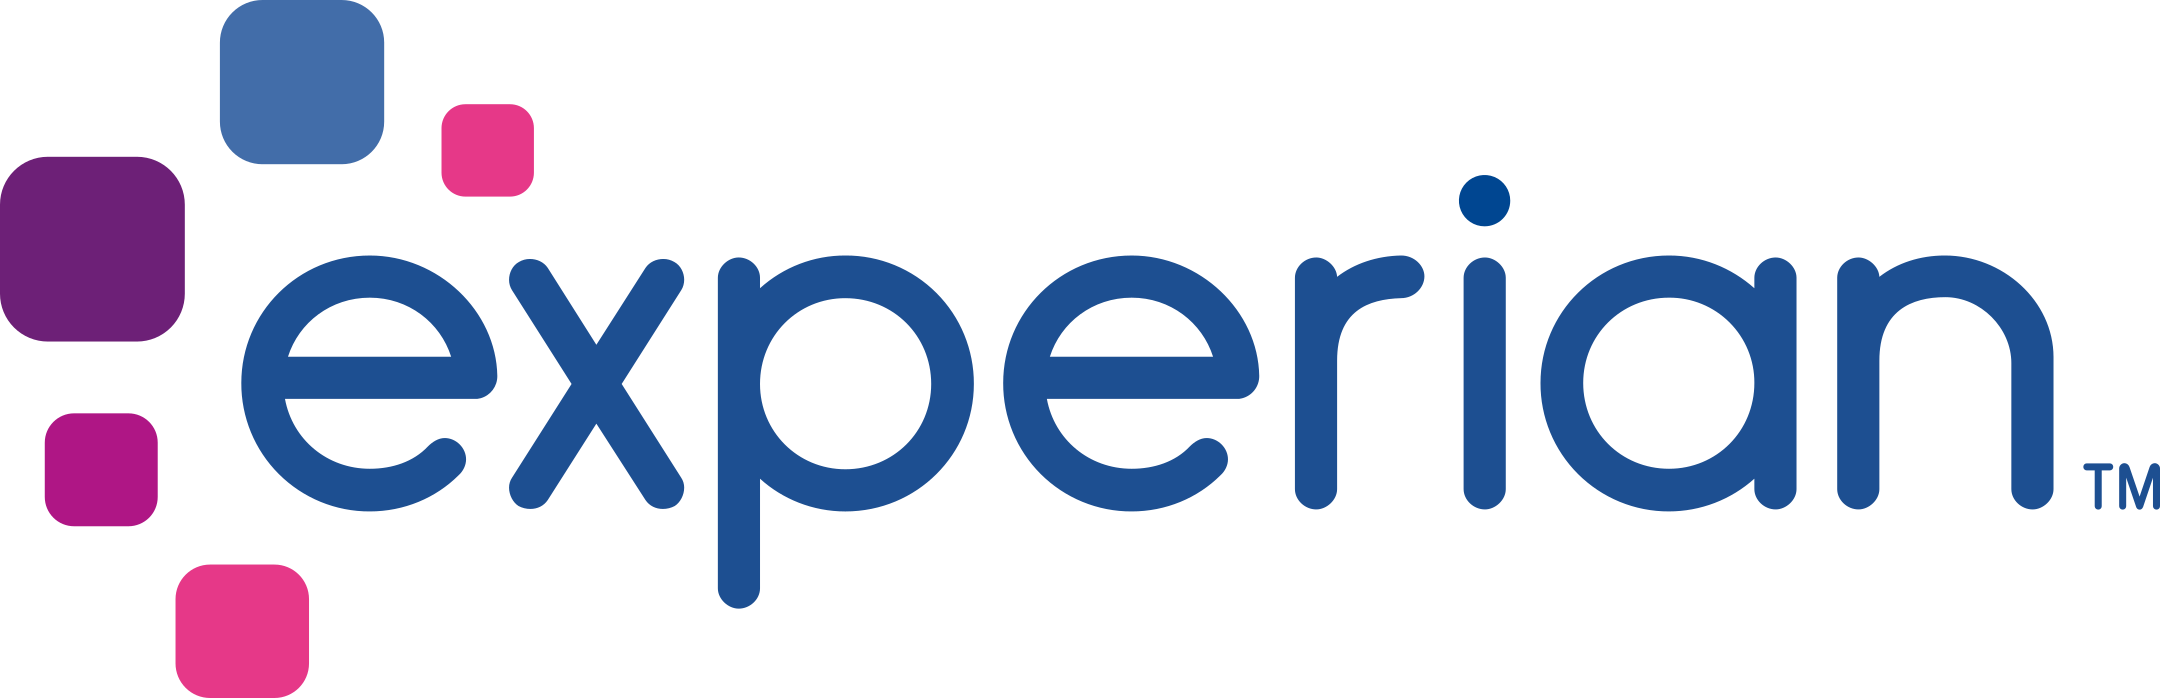 experian logo 1 - Experian Logo